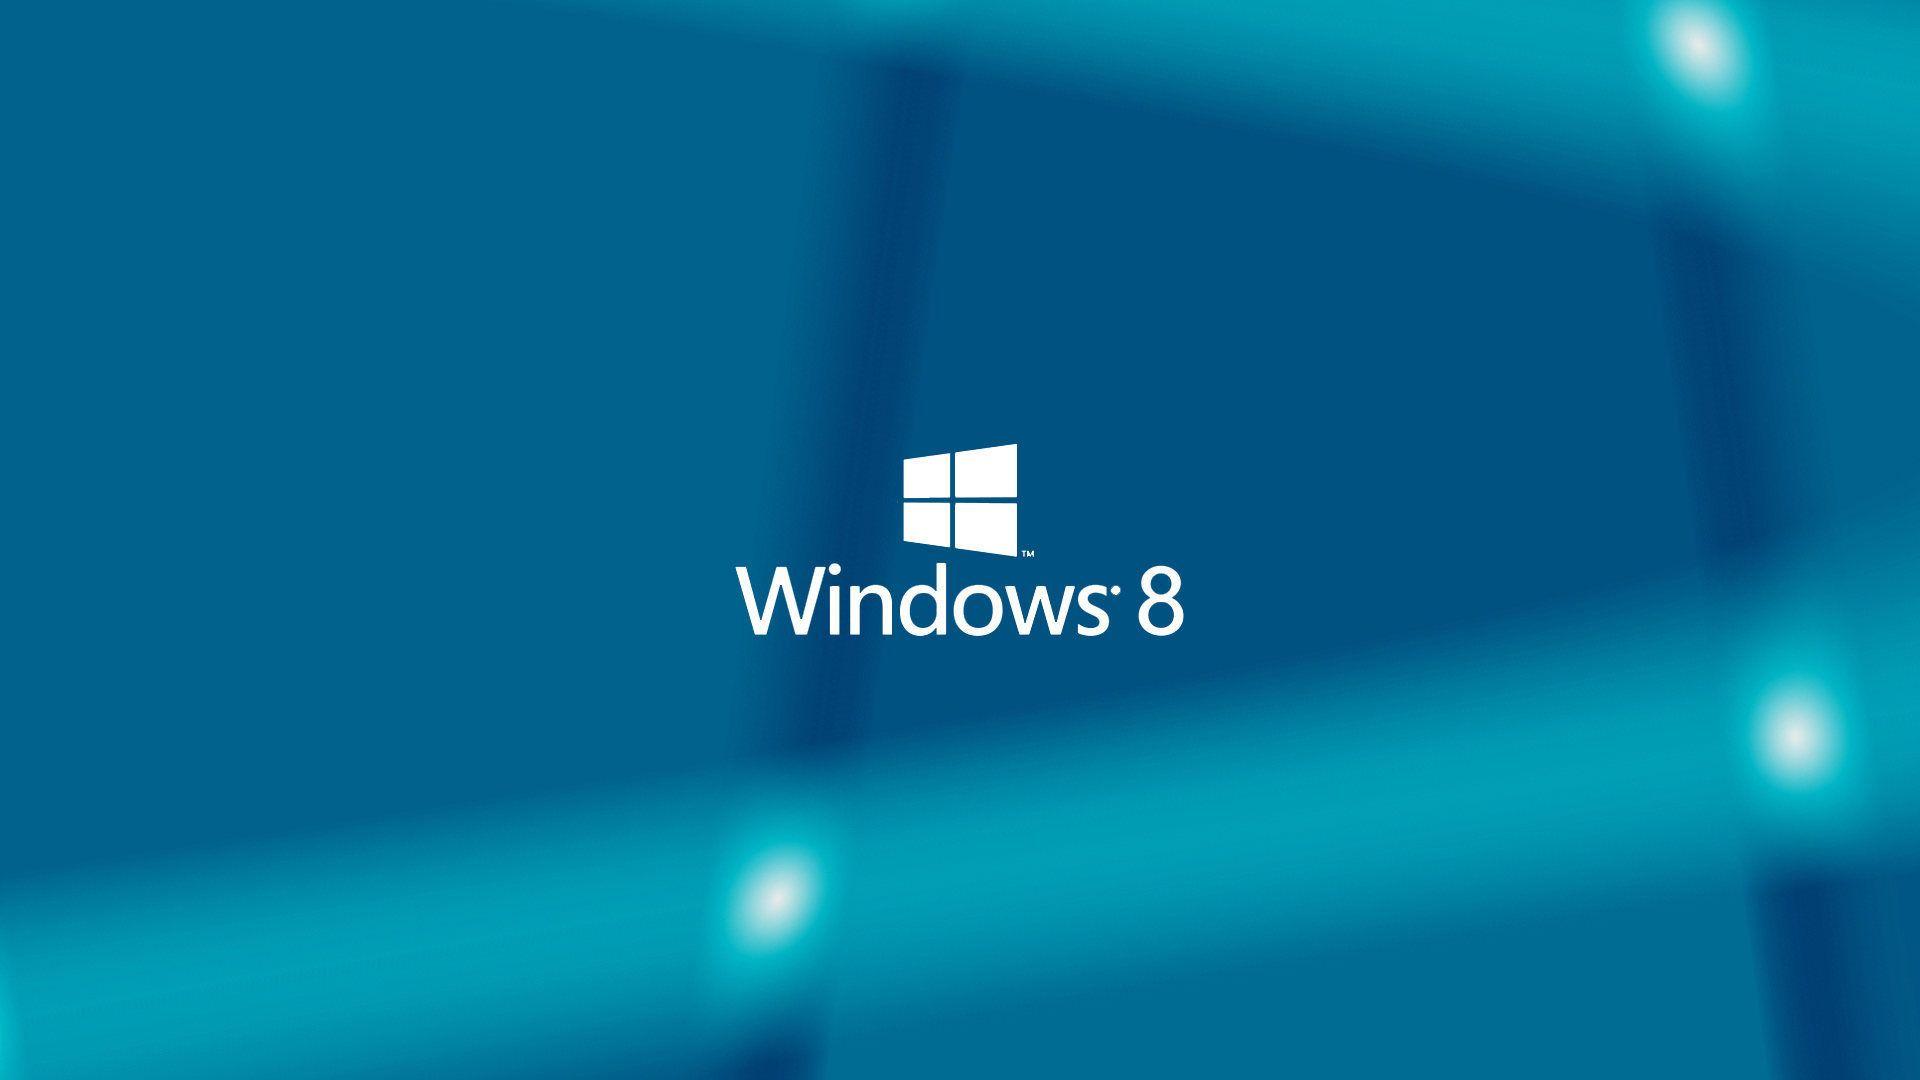 Windows 8 Wallpaper For Desktop Here